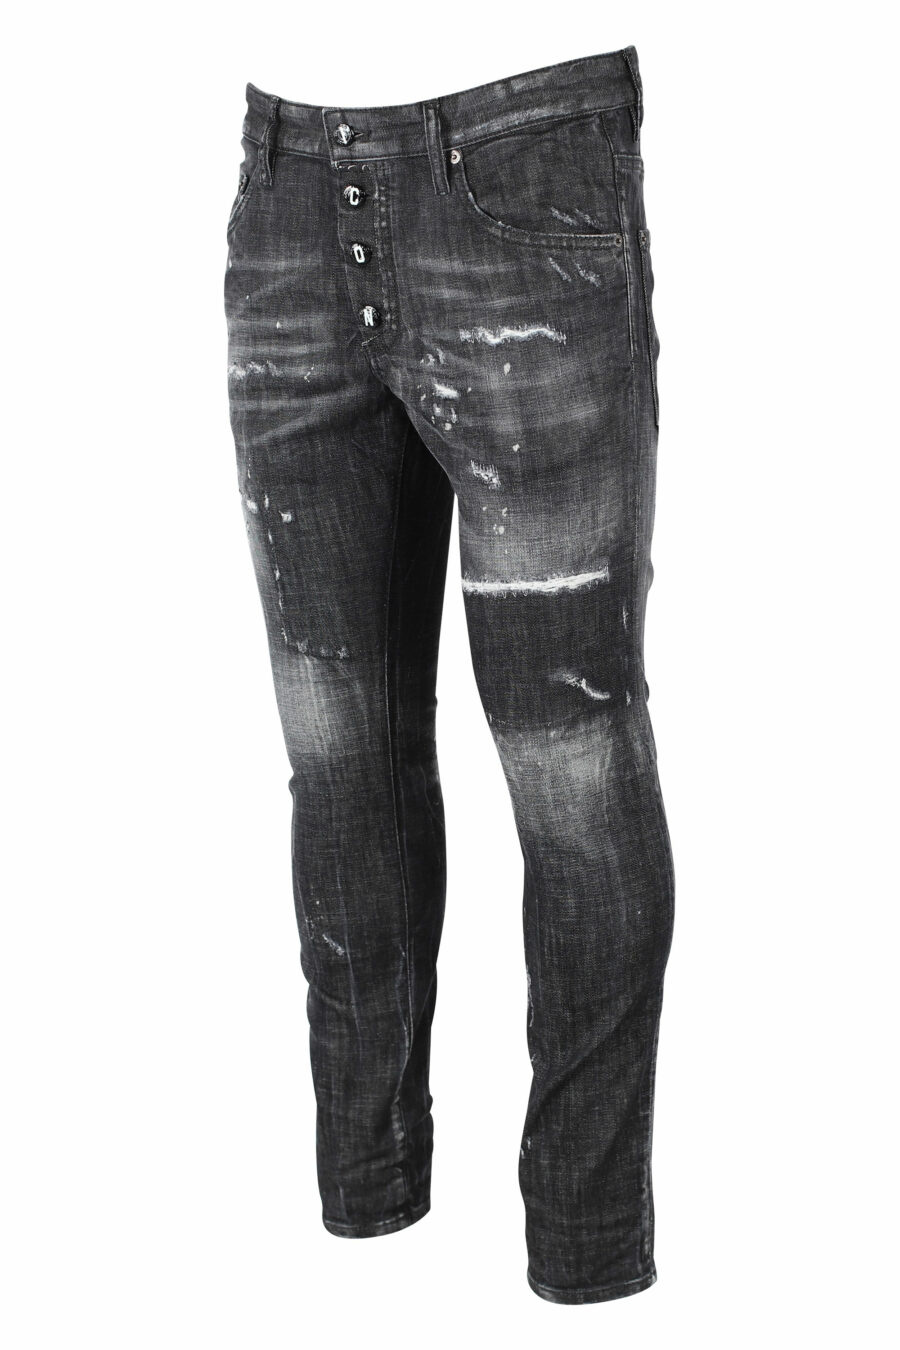 Pantalón vaquero "Skater Jean" negro con logo en botones y semiroto - IMG 0824